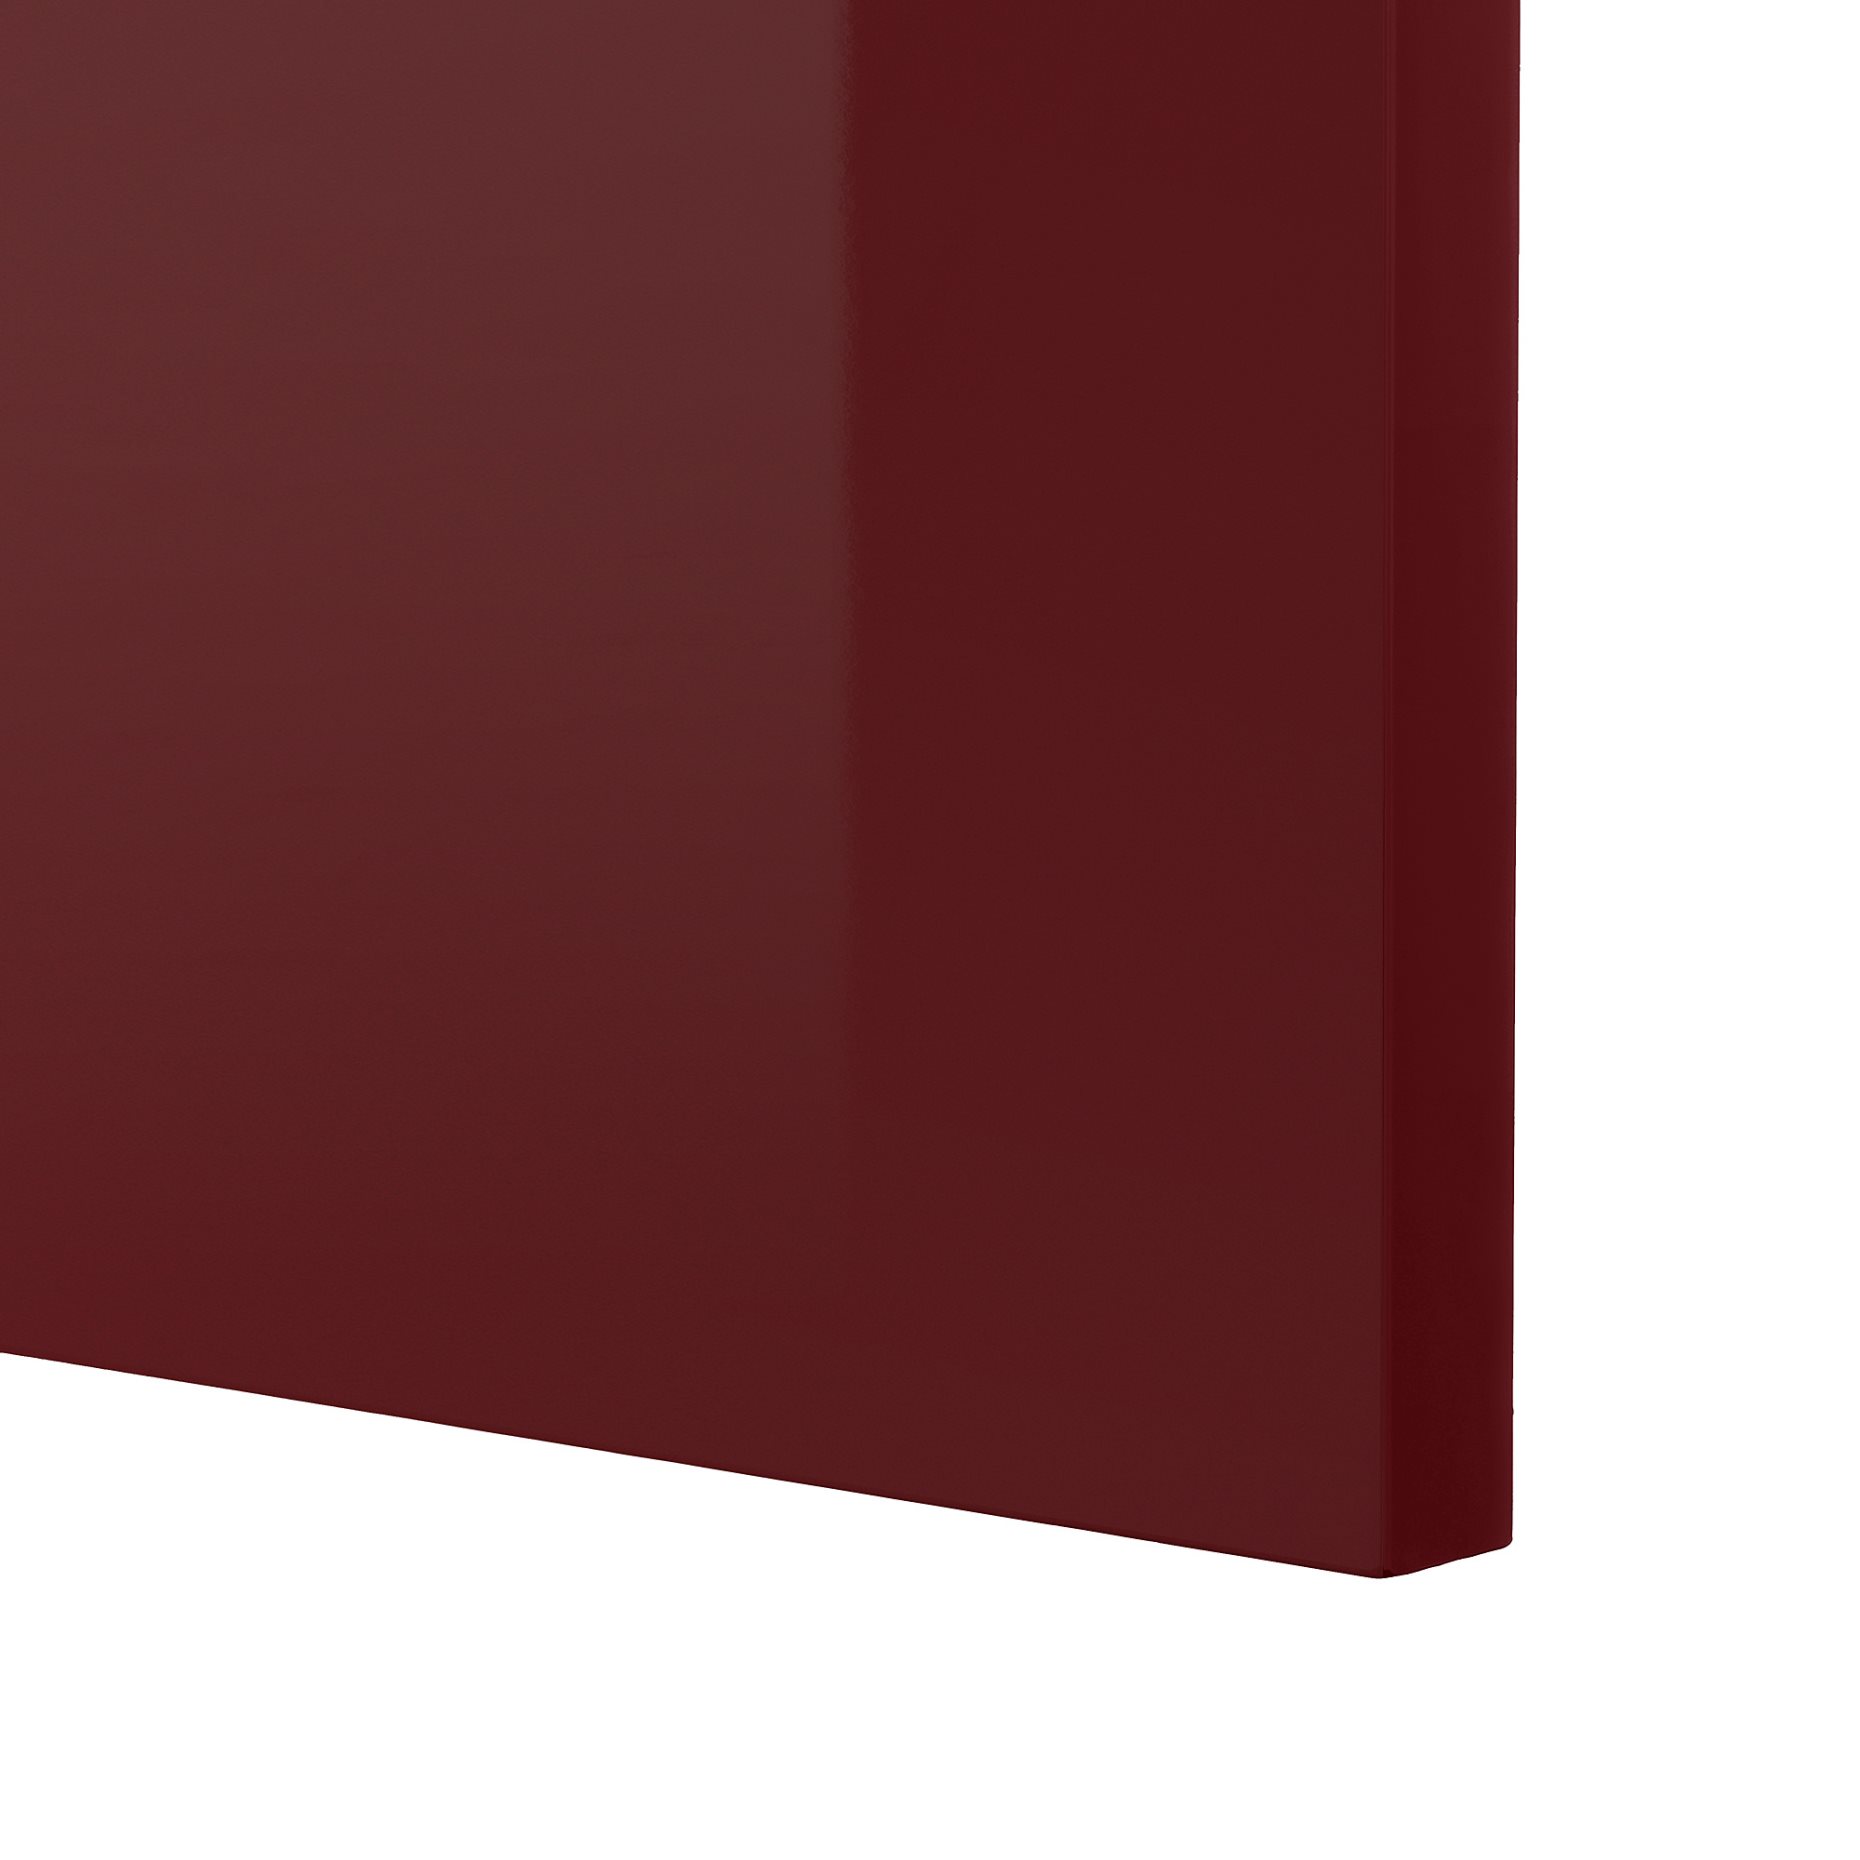 METOD, ψηλό ντουλάπι με εσωτερικά εξάρτηματα για τα είδη καθαρισμού, 40x60x220 cm, 094.653.30